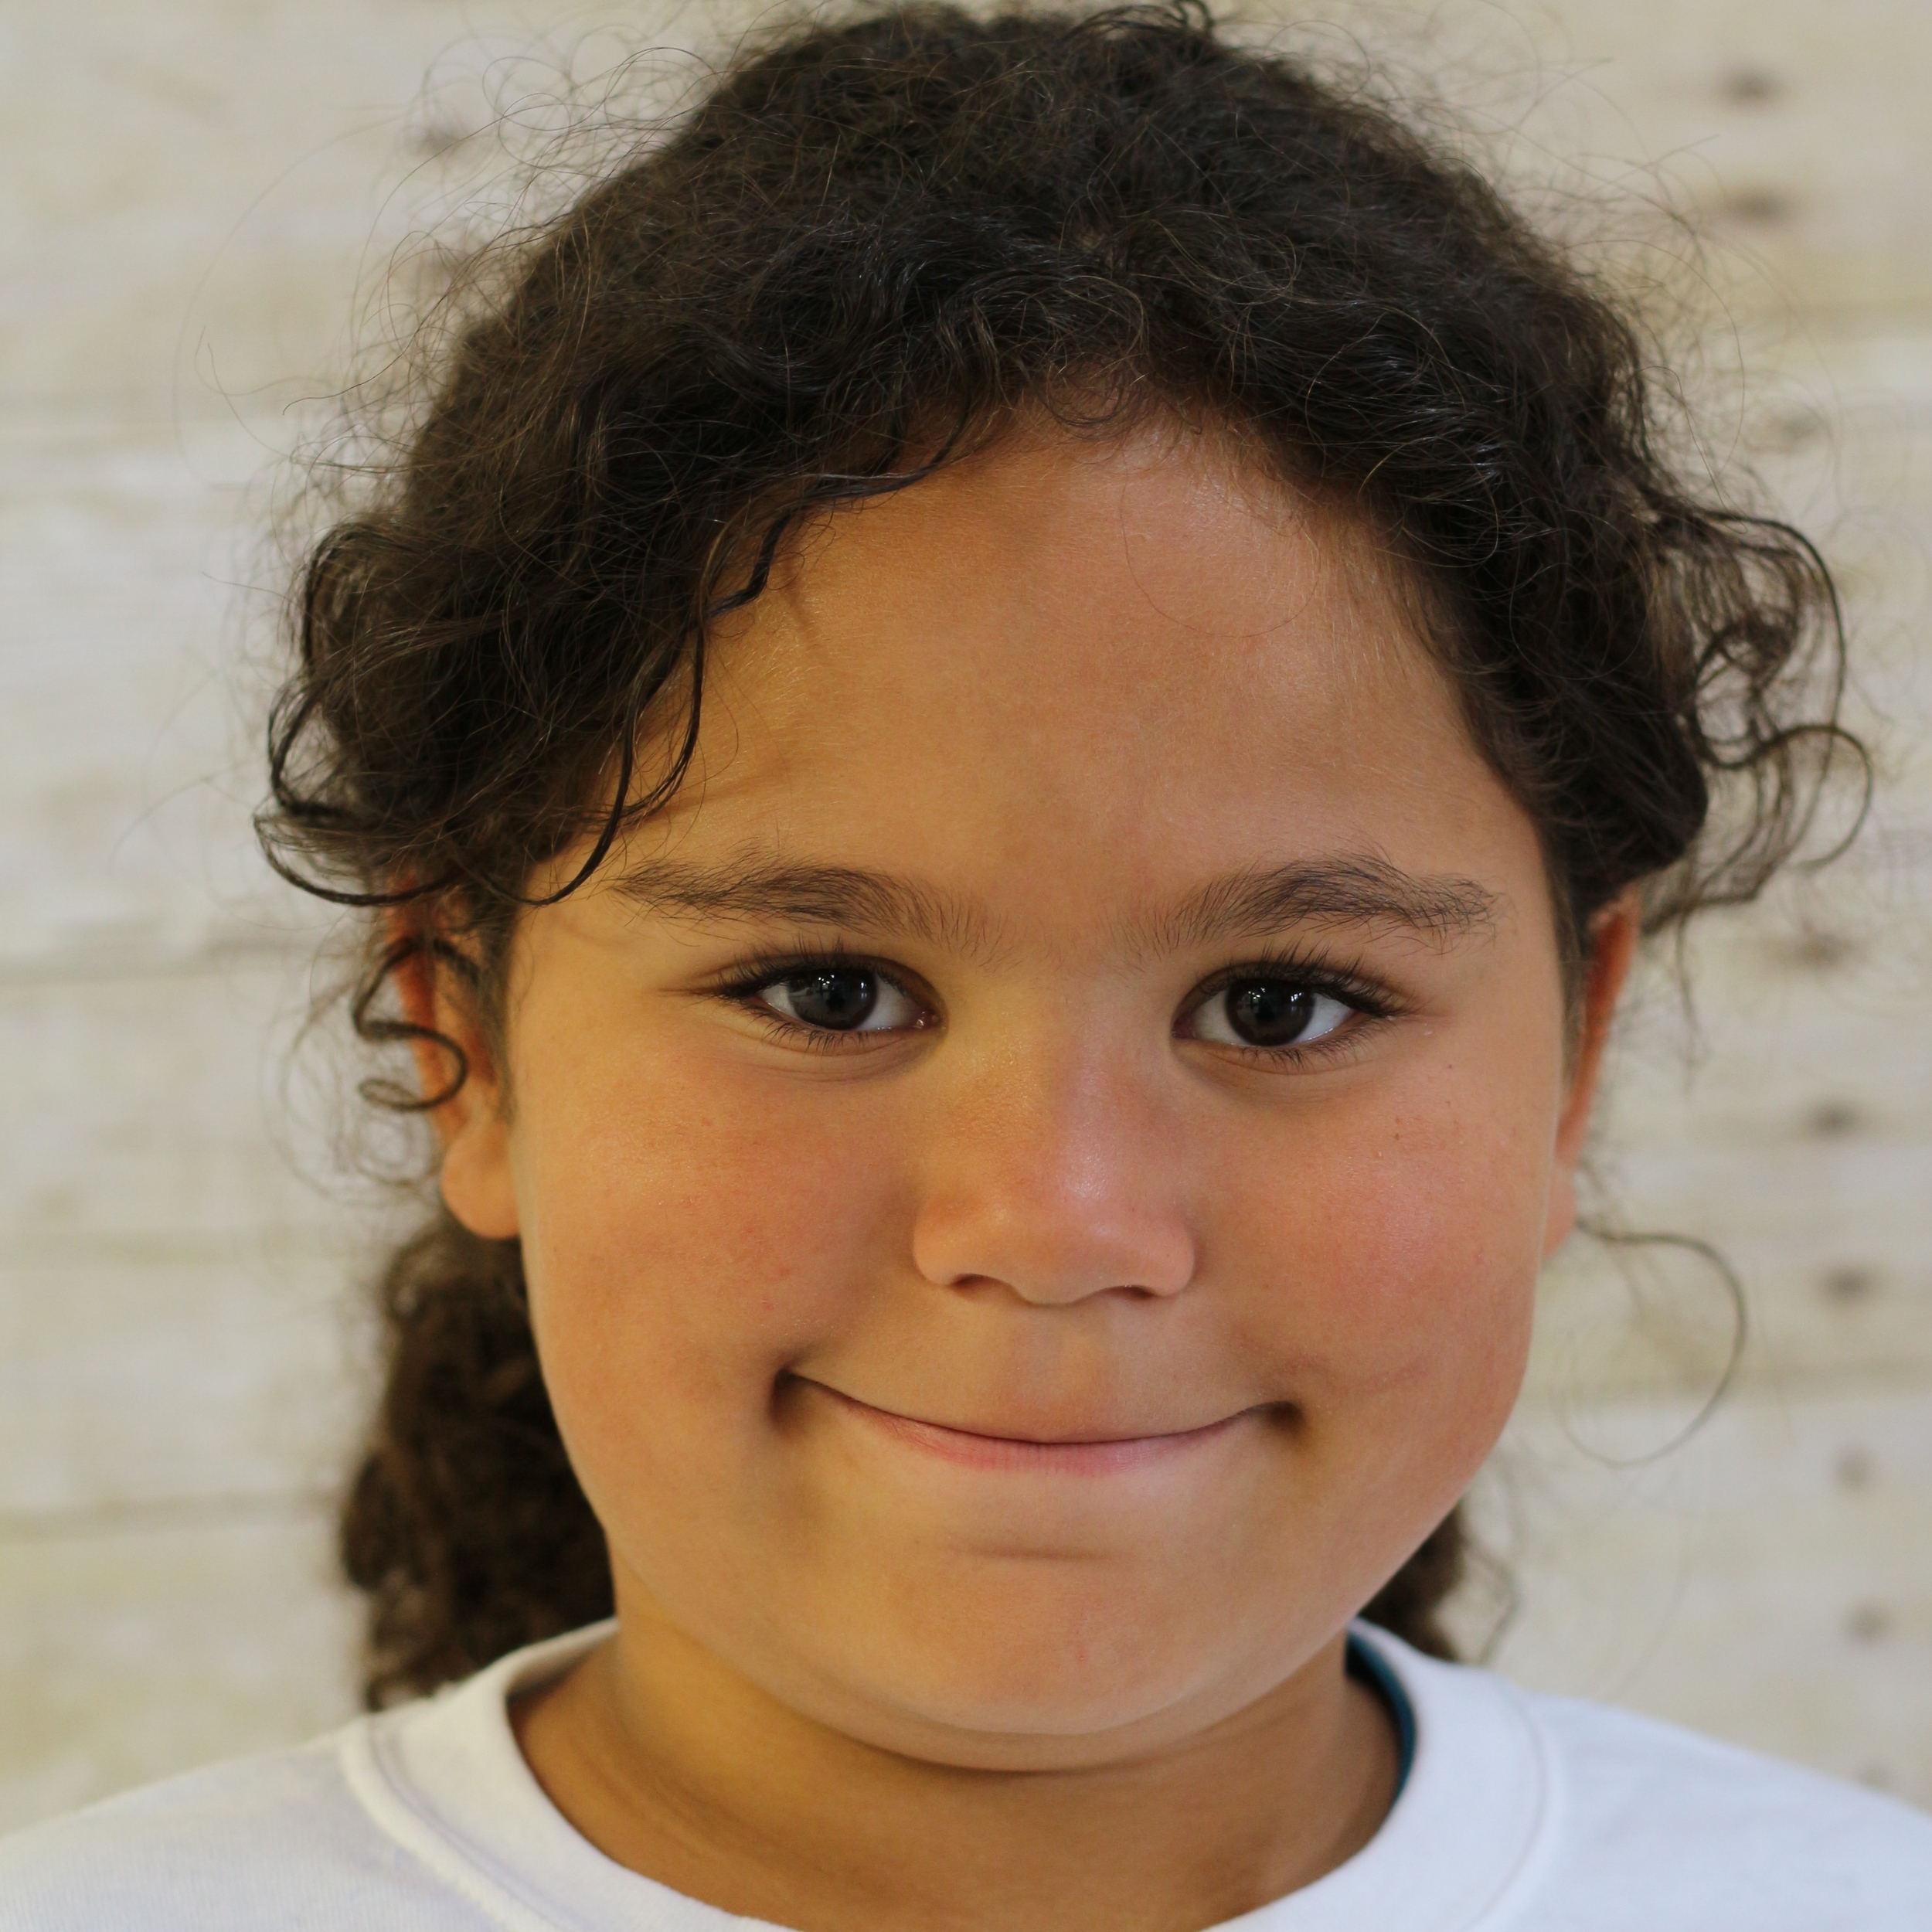 Jaliyah, age 7, Bayshore, NY